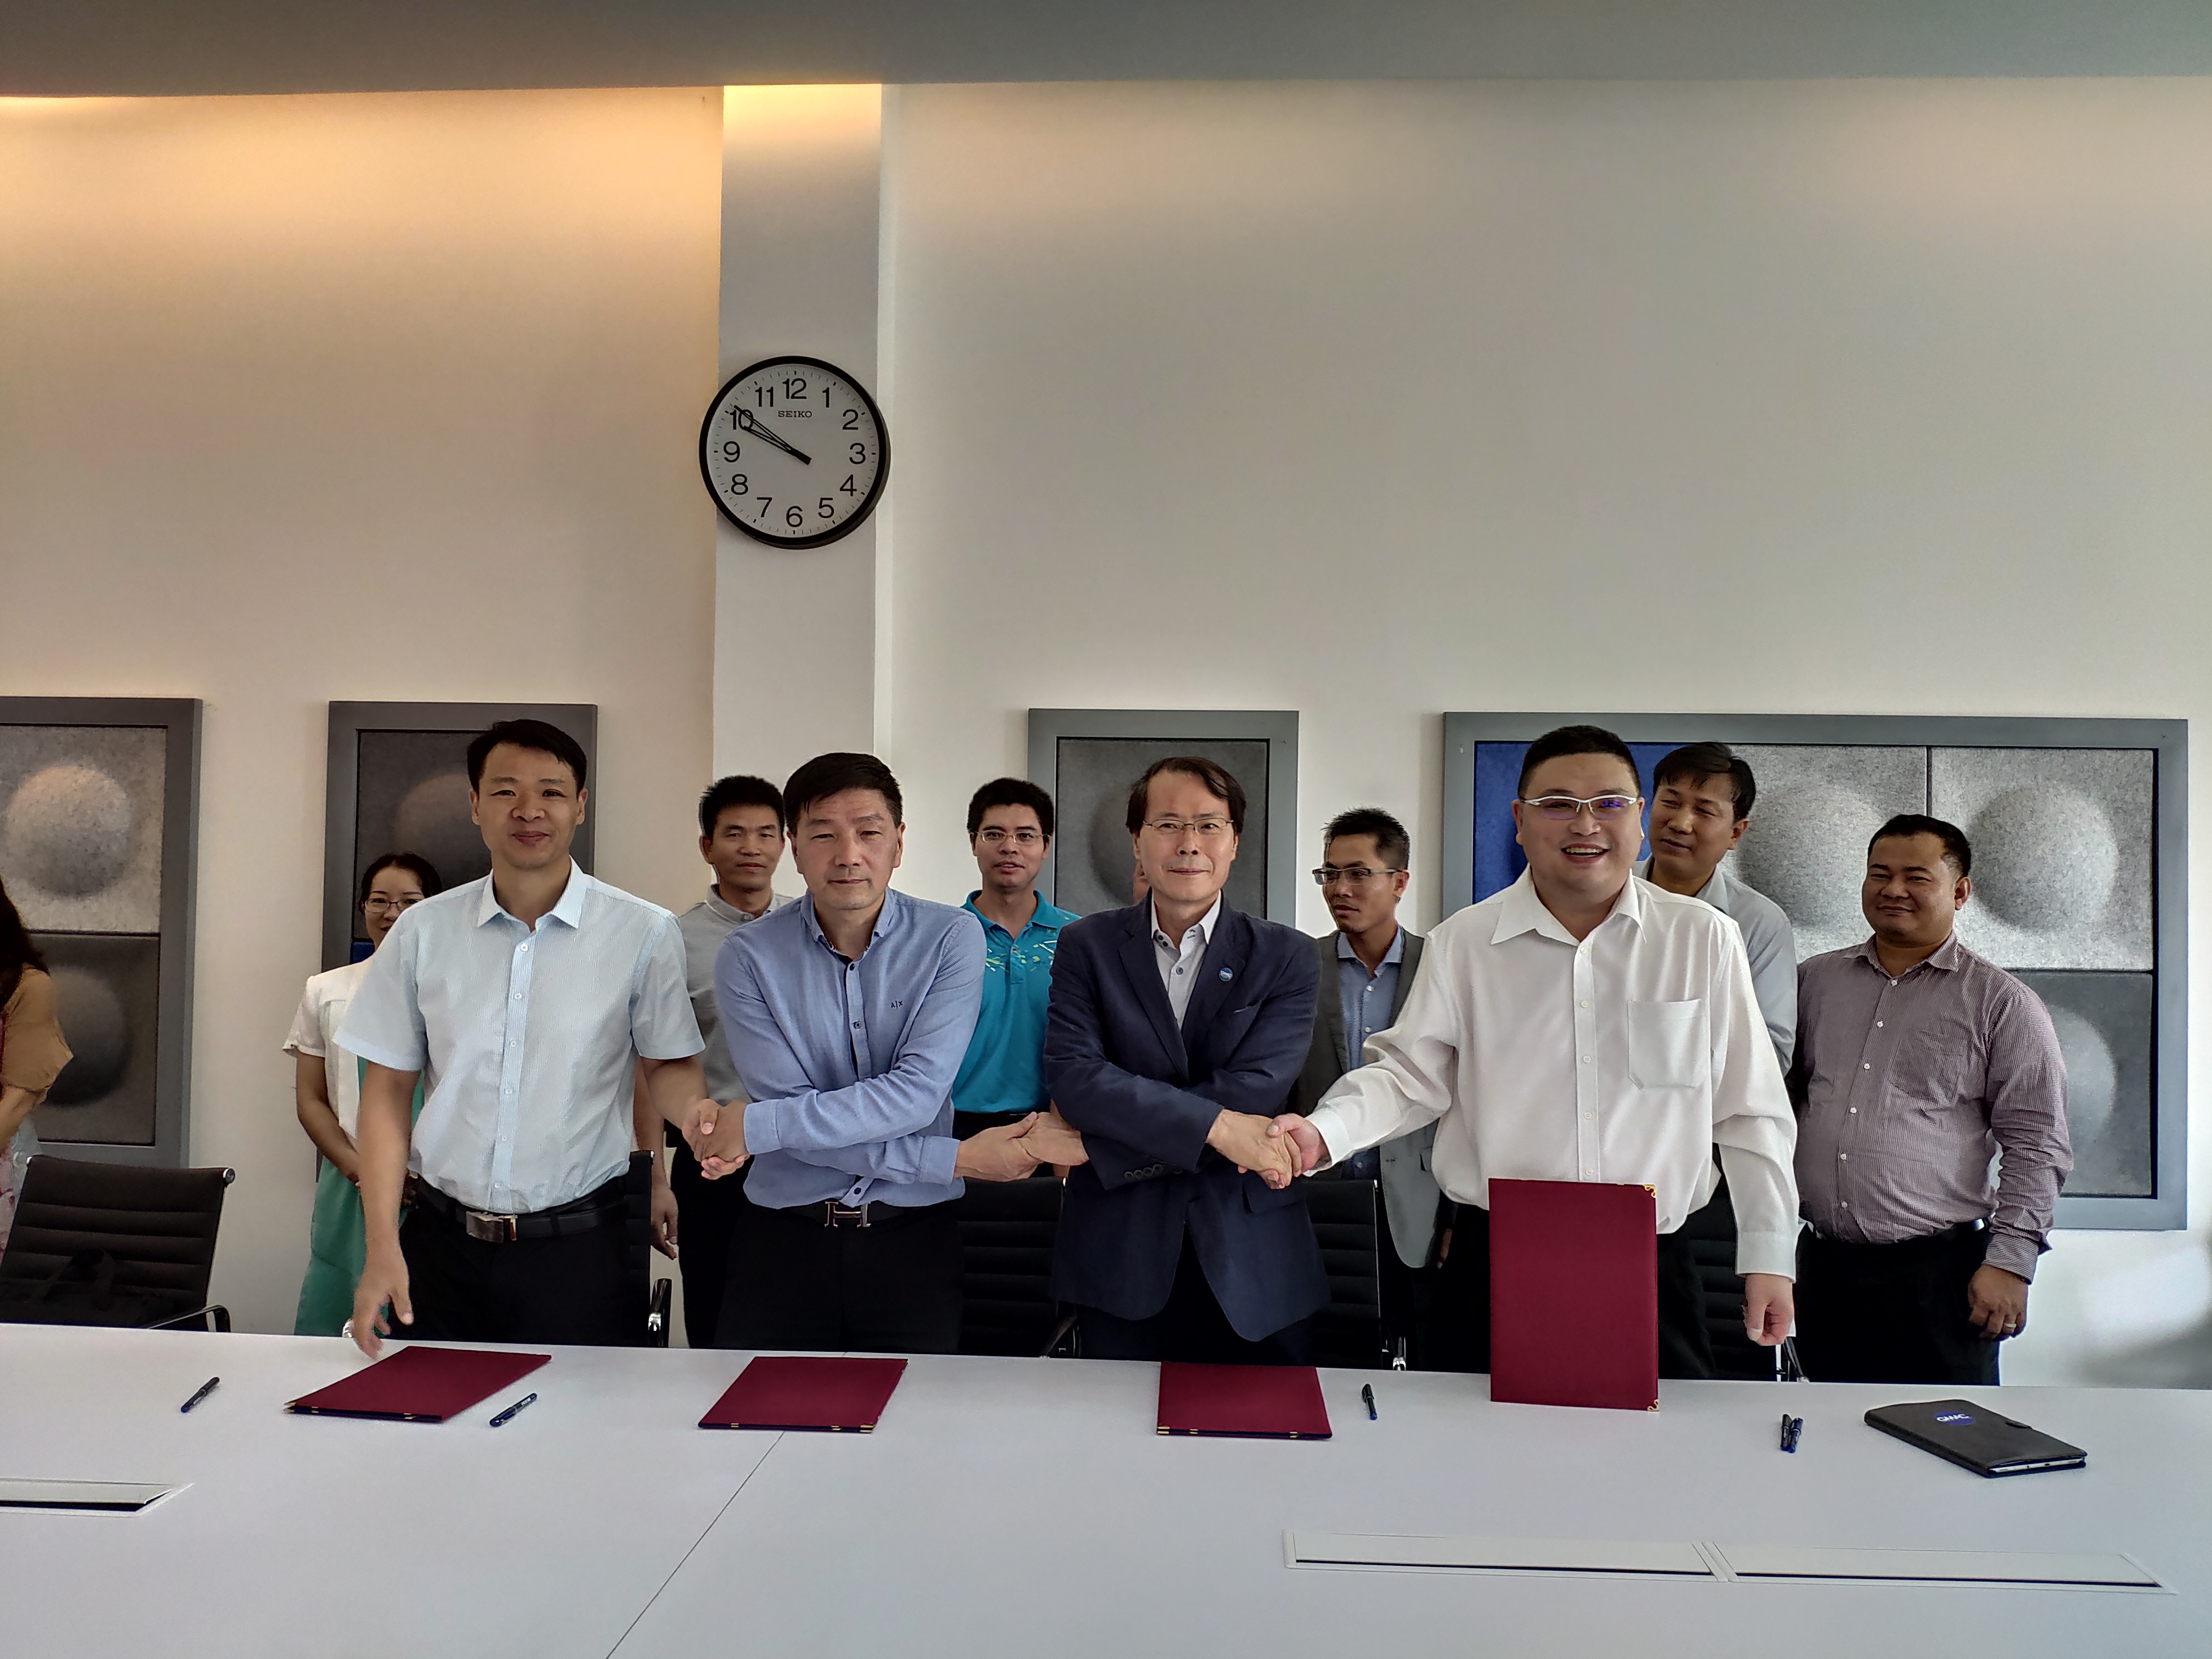 与柬埔寨服装培训学院、中国纺织协会和制衣协会签订了四方合作协议